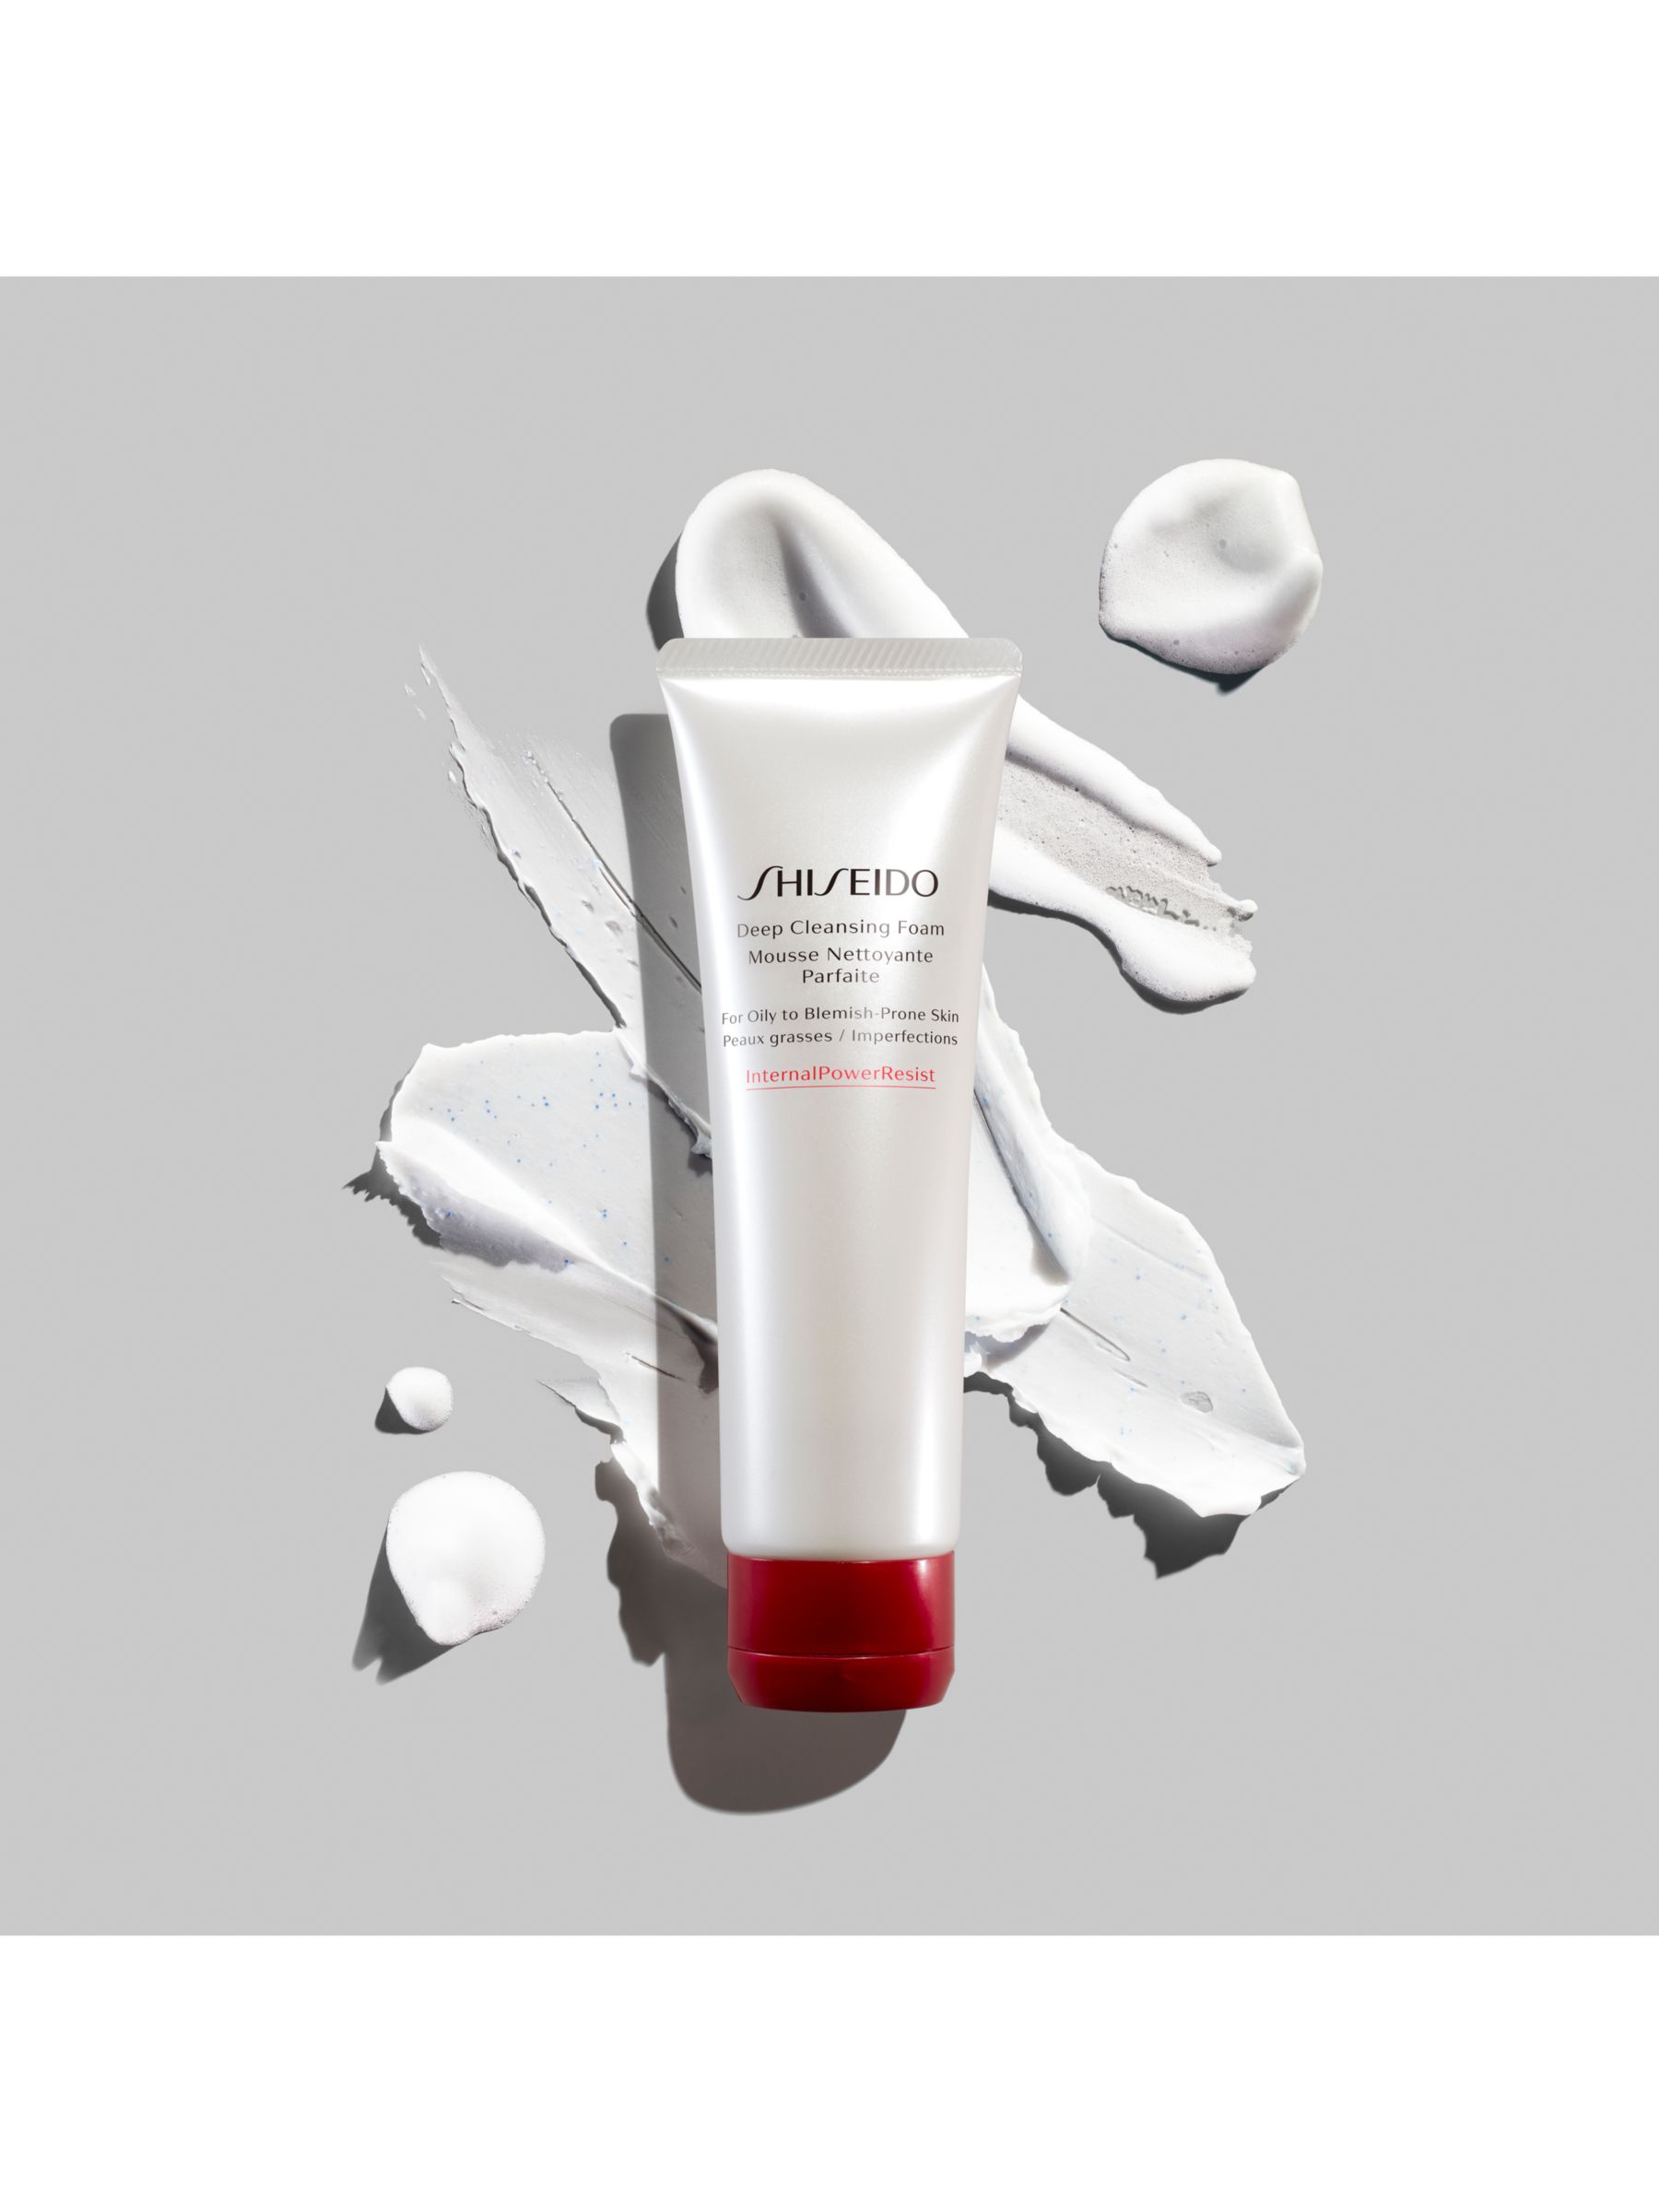 Shiseido Deep Cleansing Foam, 125ml